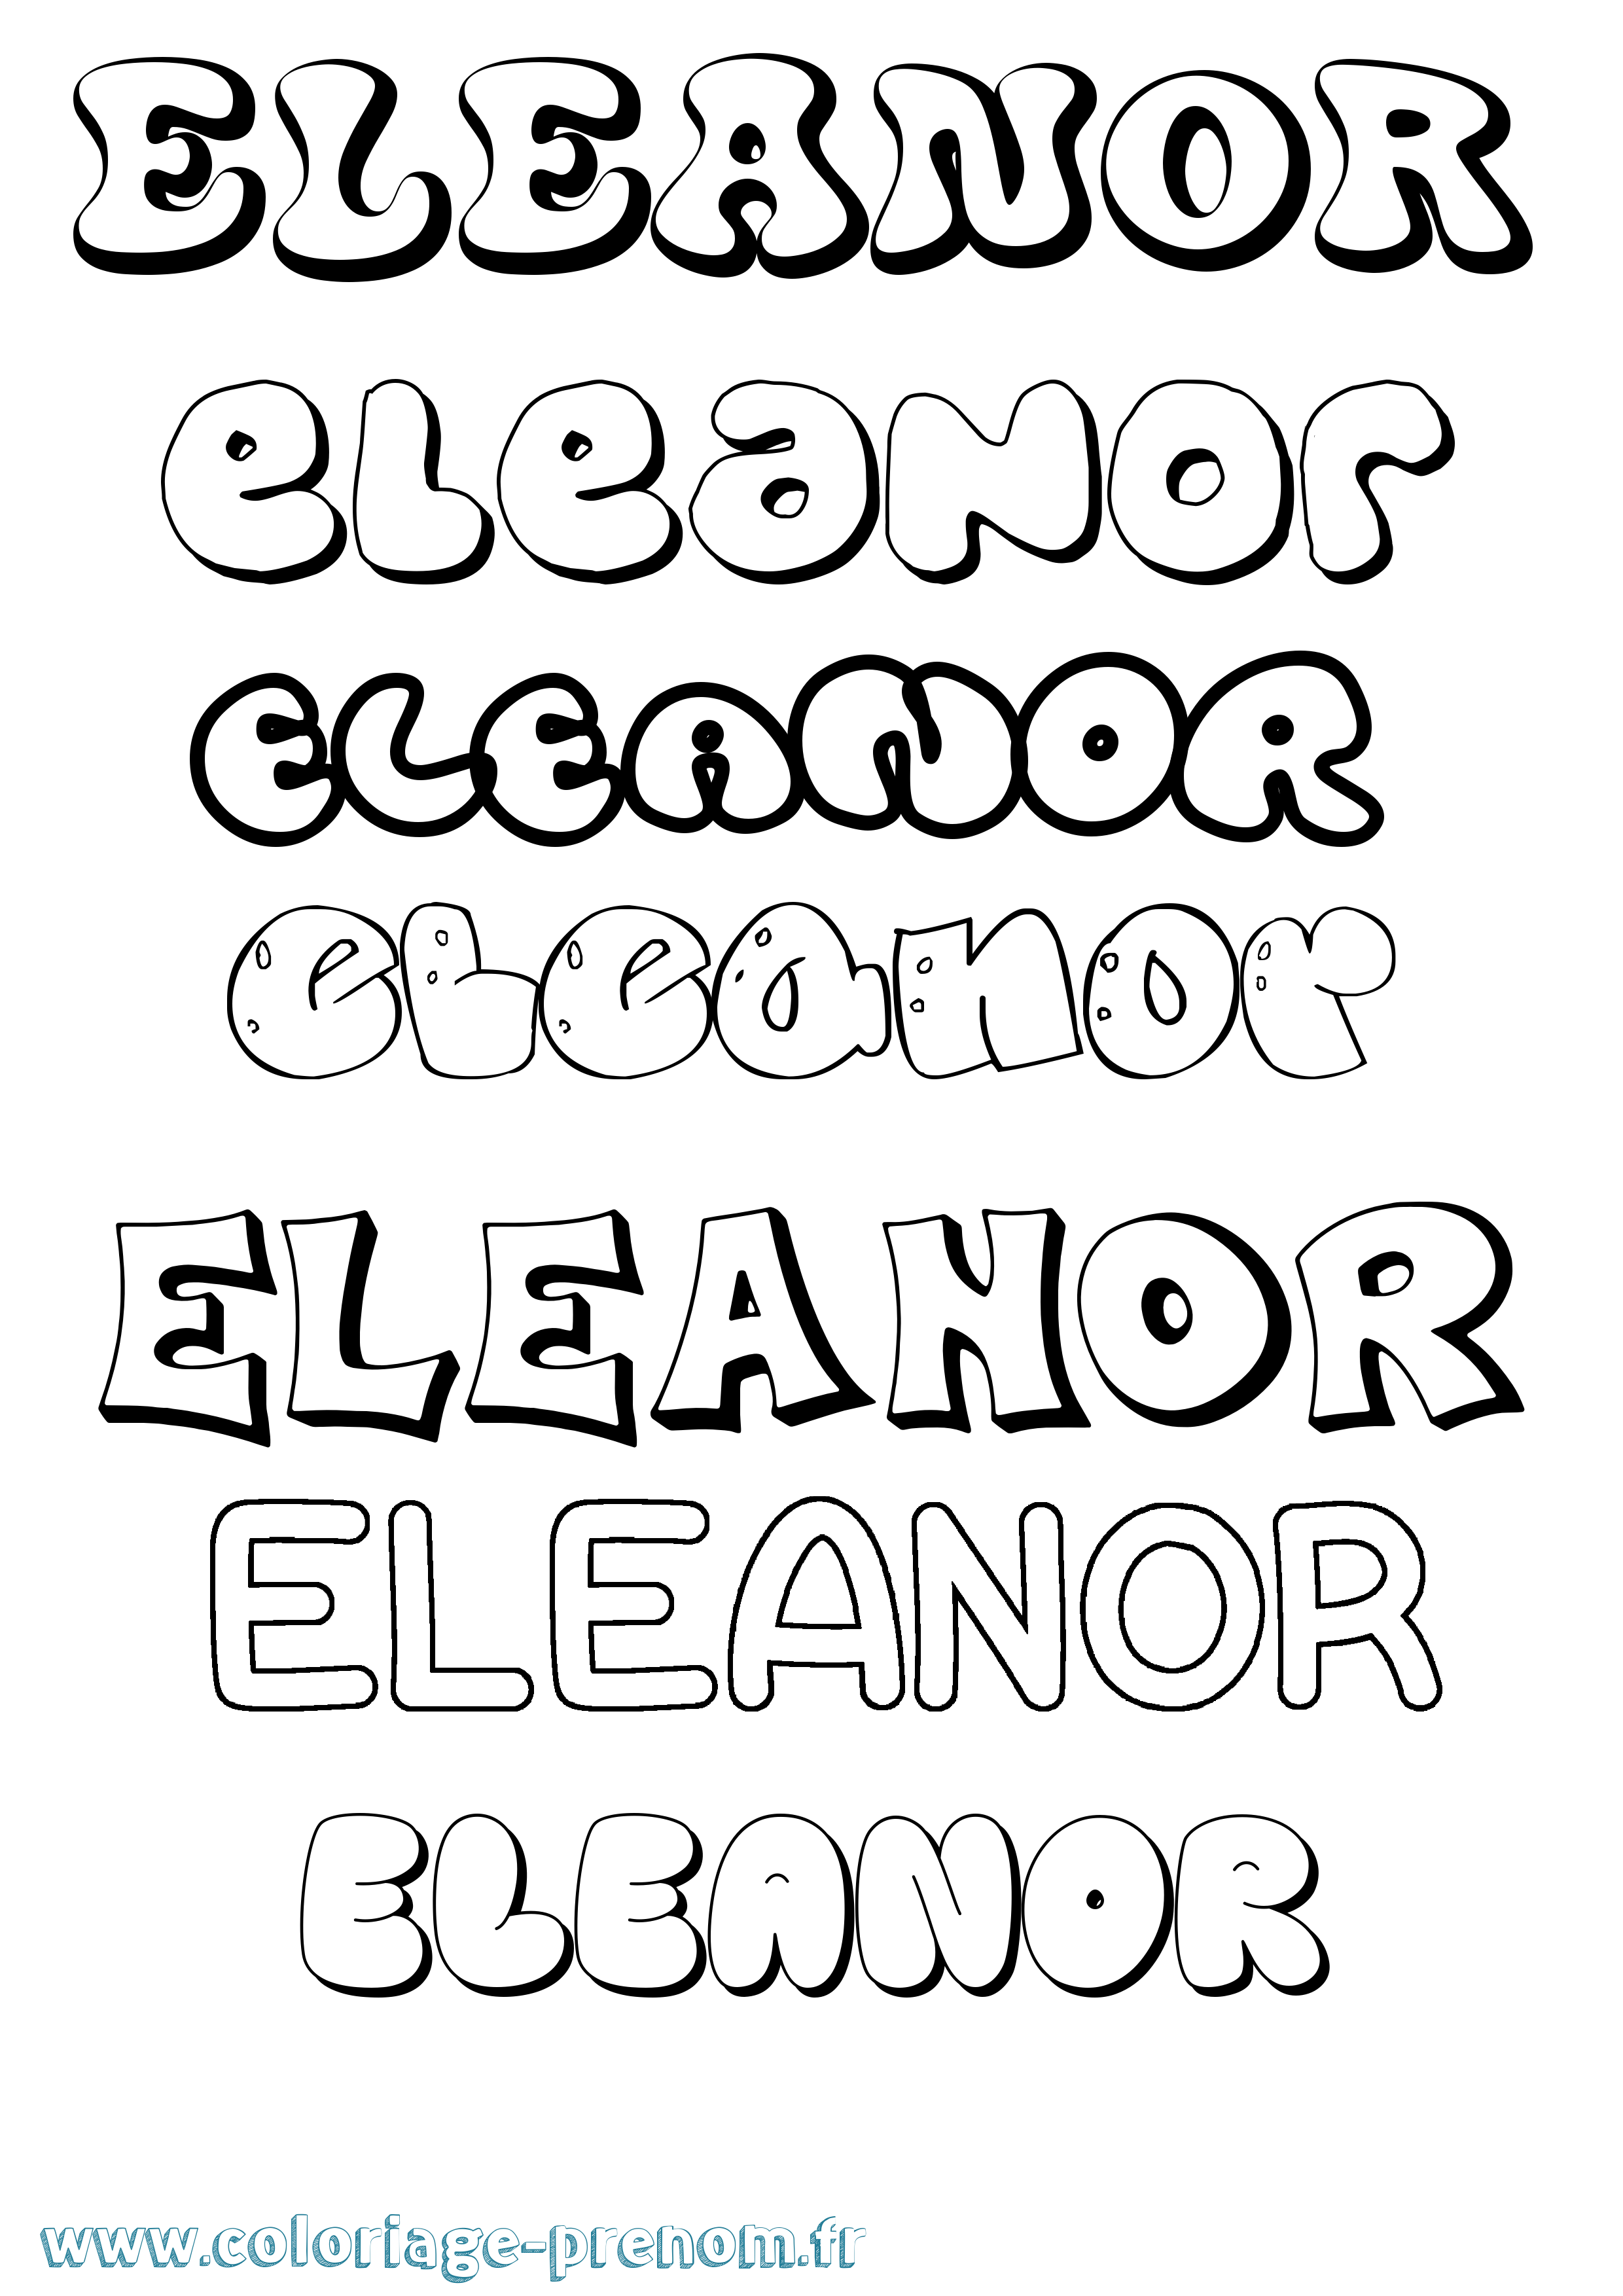 Coloriage prénom Eleanor Bubble